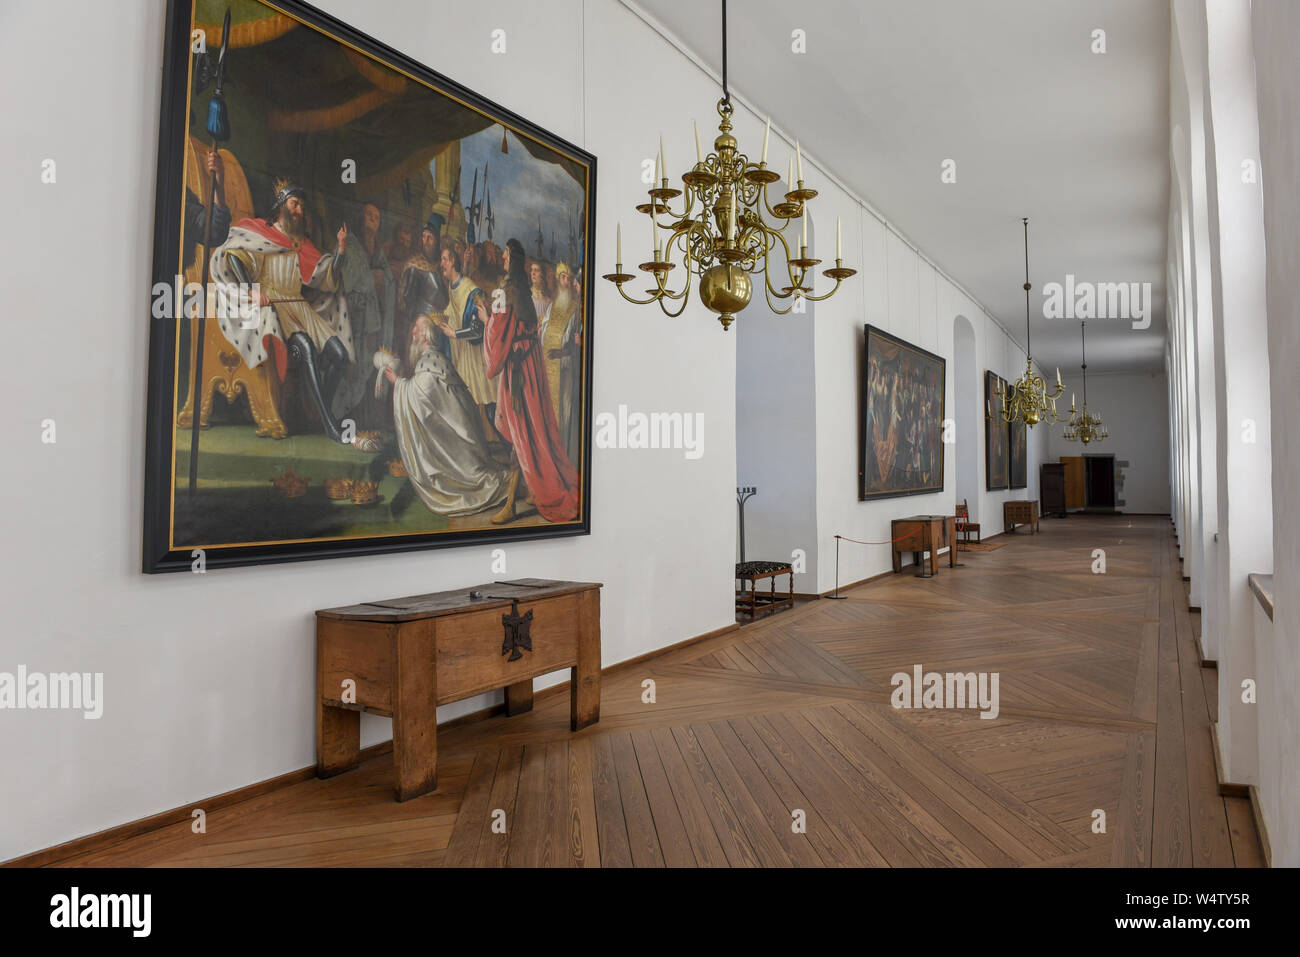 Helsingor, Denmark - 28 June 2019: interiors of Kronborg castle at Helsingor on Denmark Stock Photo